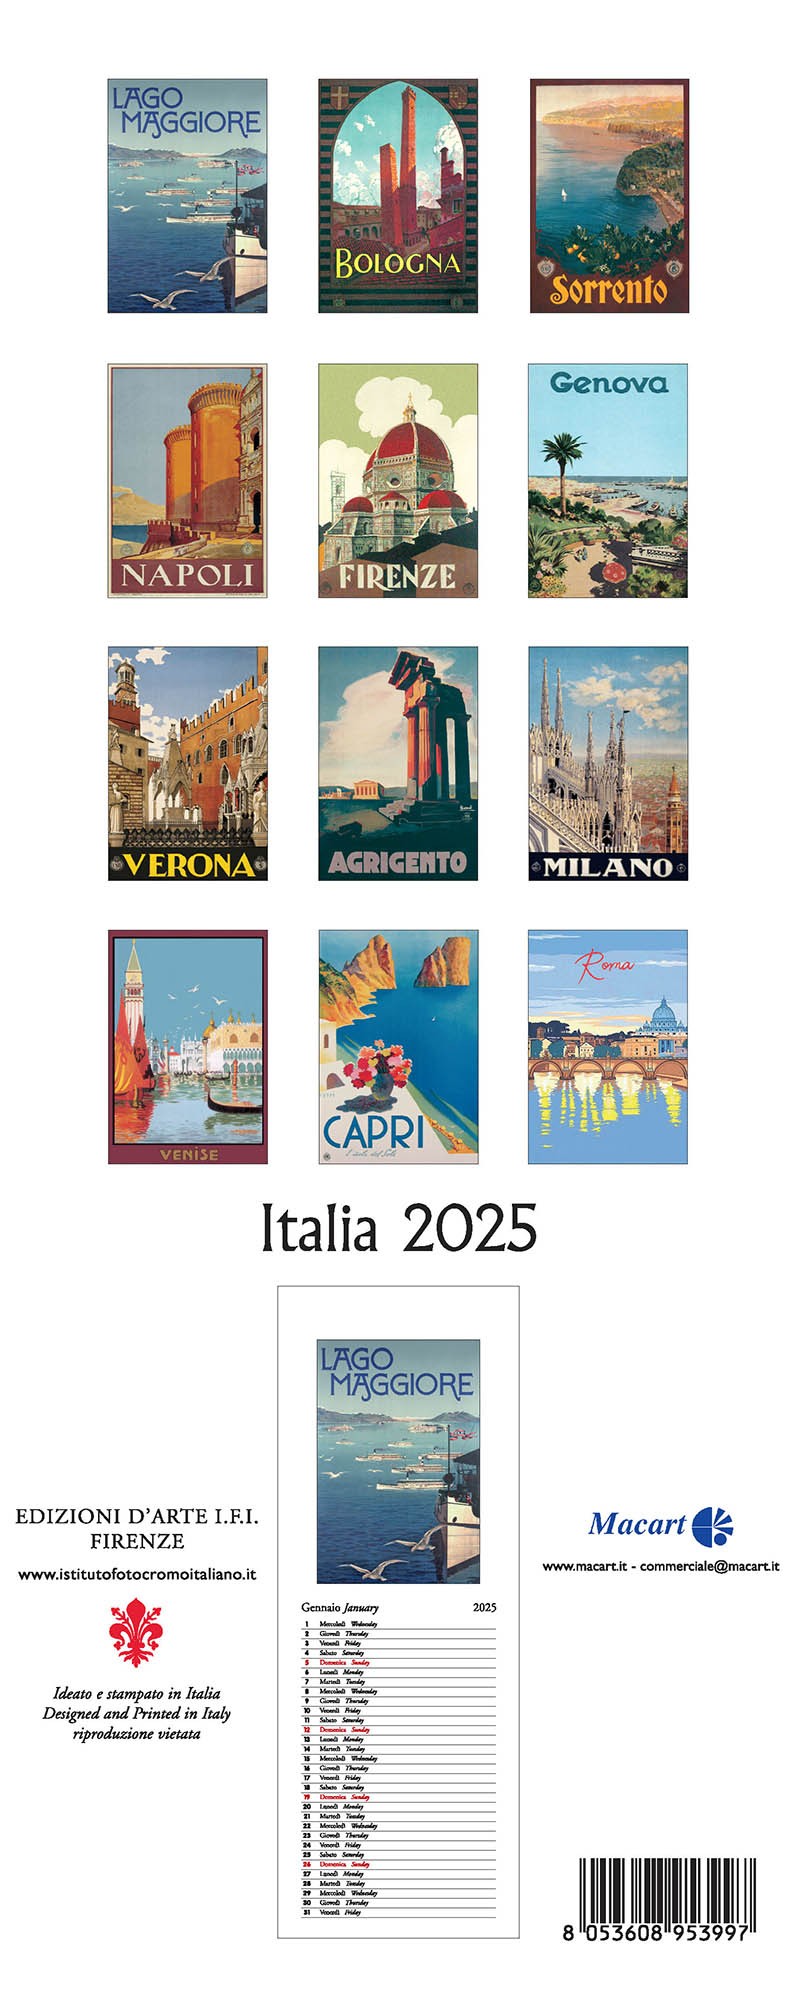 Italy 2025 